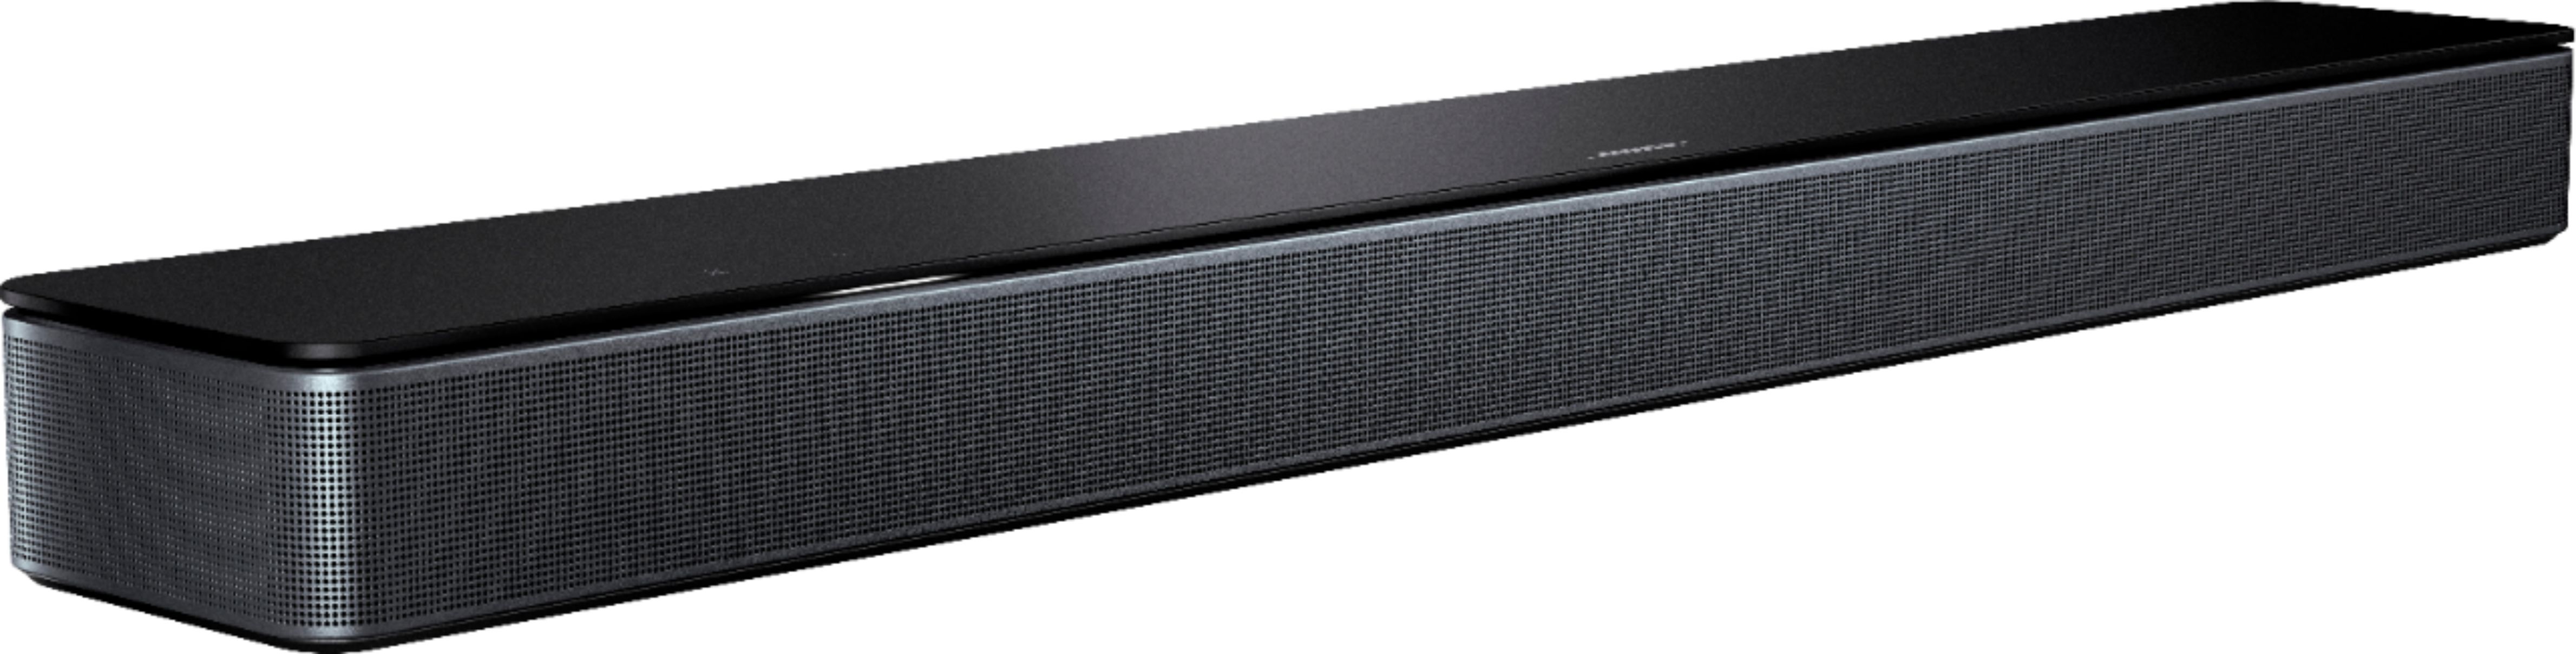 Bose Smart Soundbar 300 with Voice Assistant Black 843299-1100